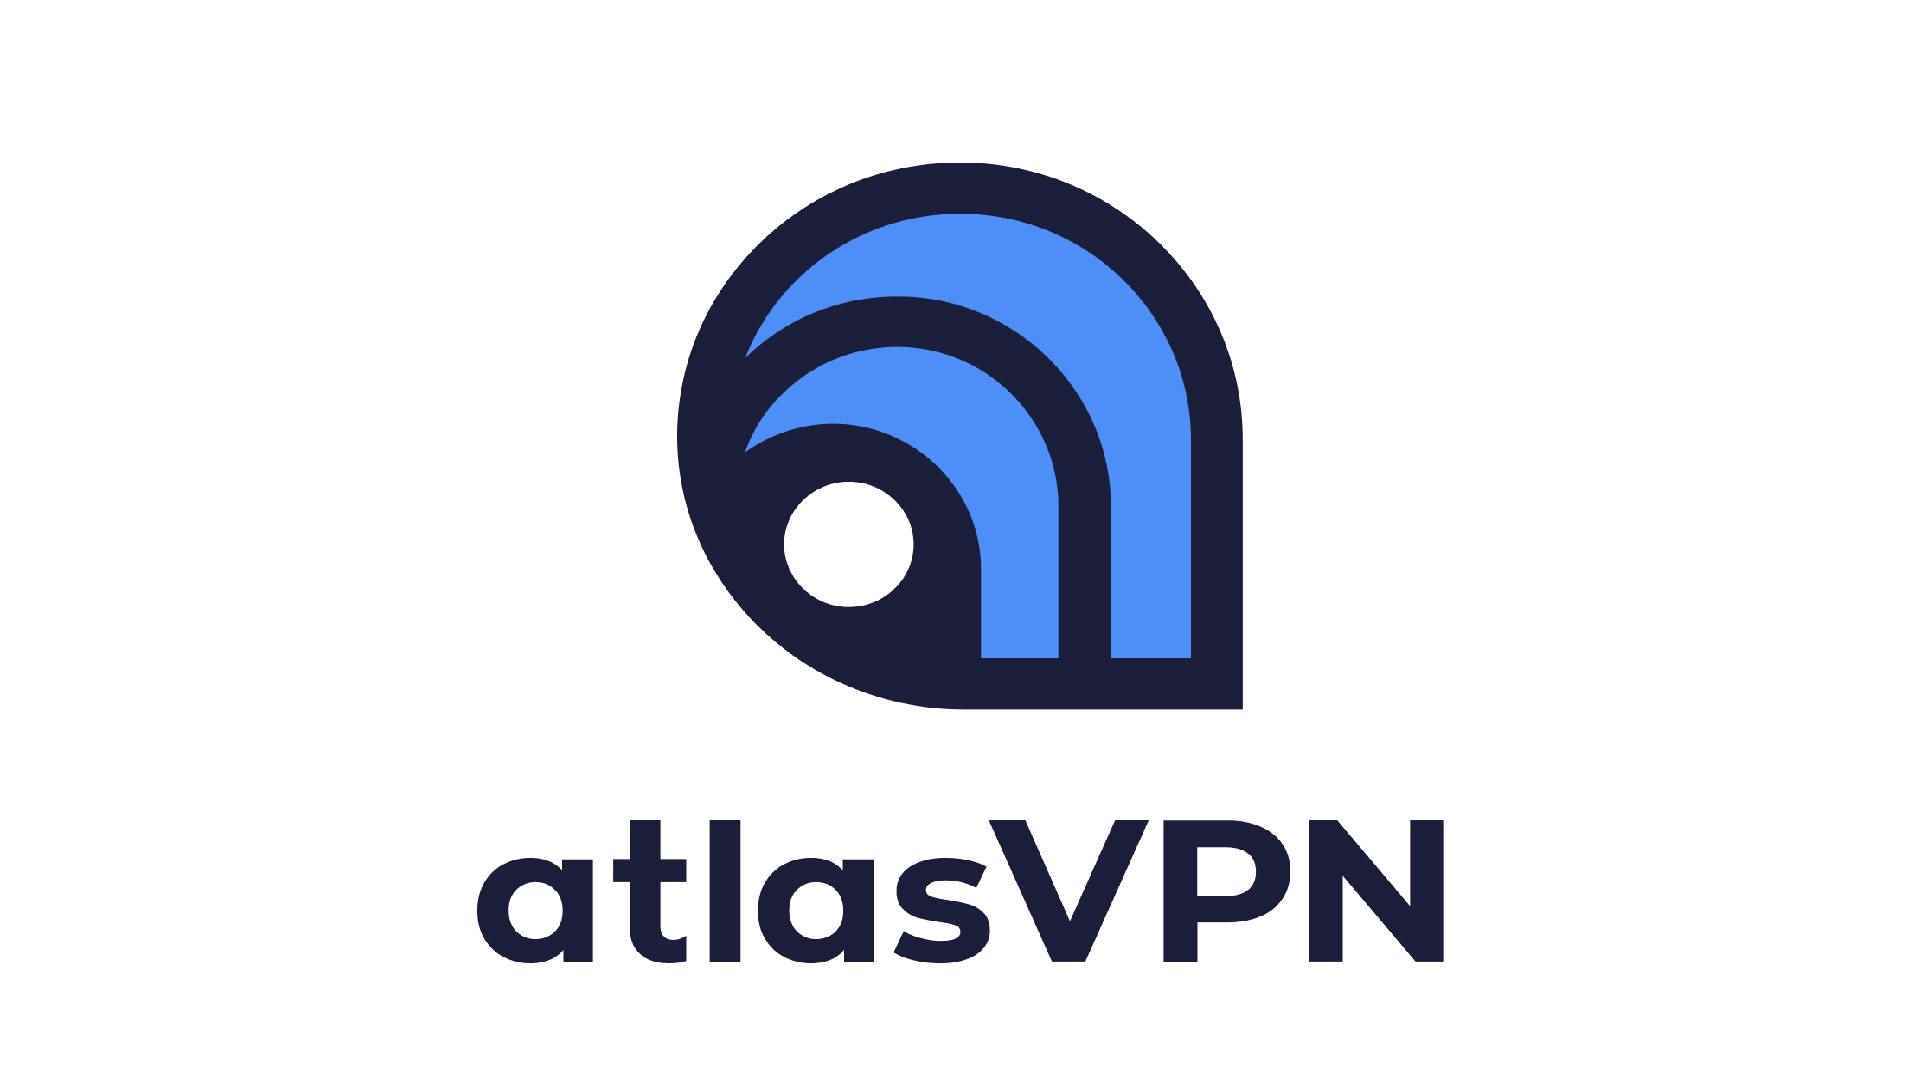 En iyi ücretsiz VPN, seçenek 3 - AtlasVPN.  Resim, AtlasVPN'in logosunu göstermektedir.